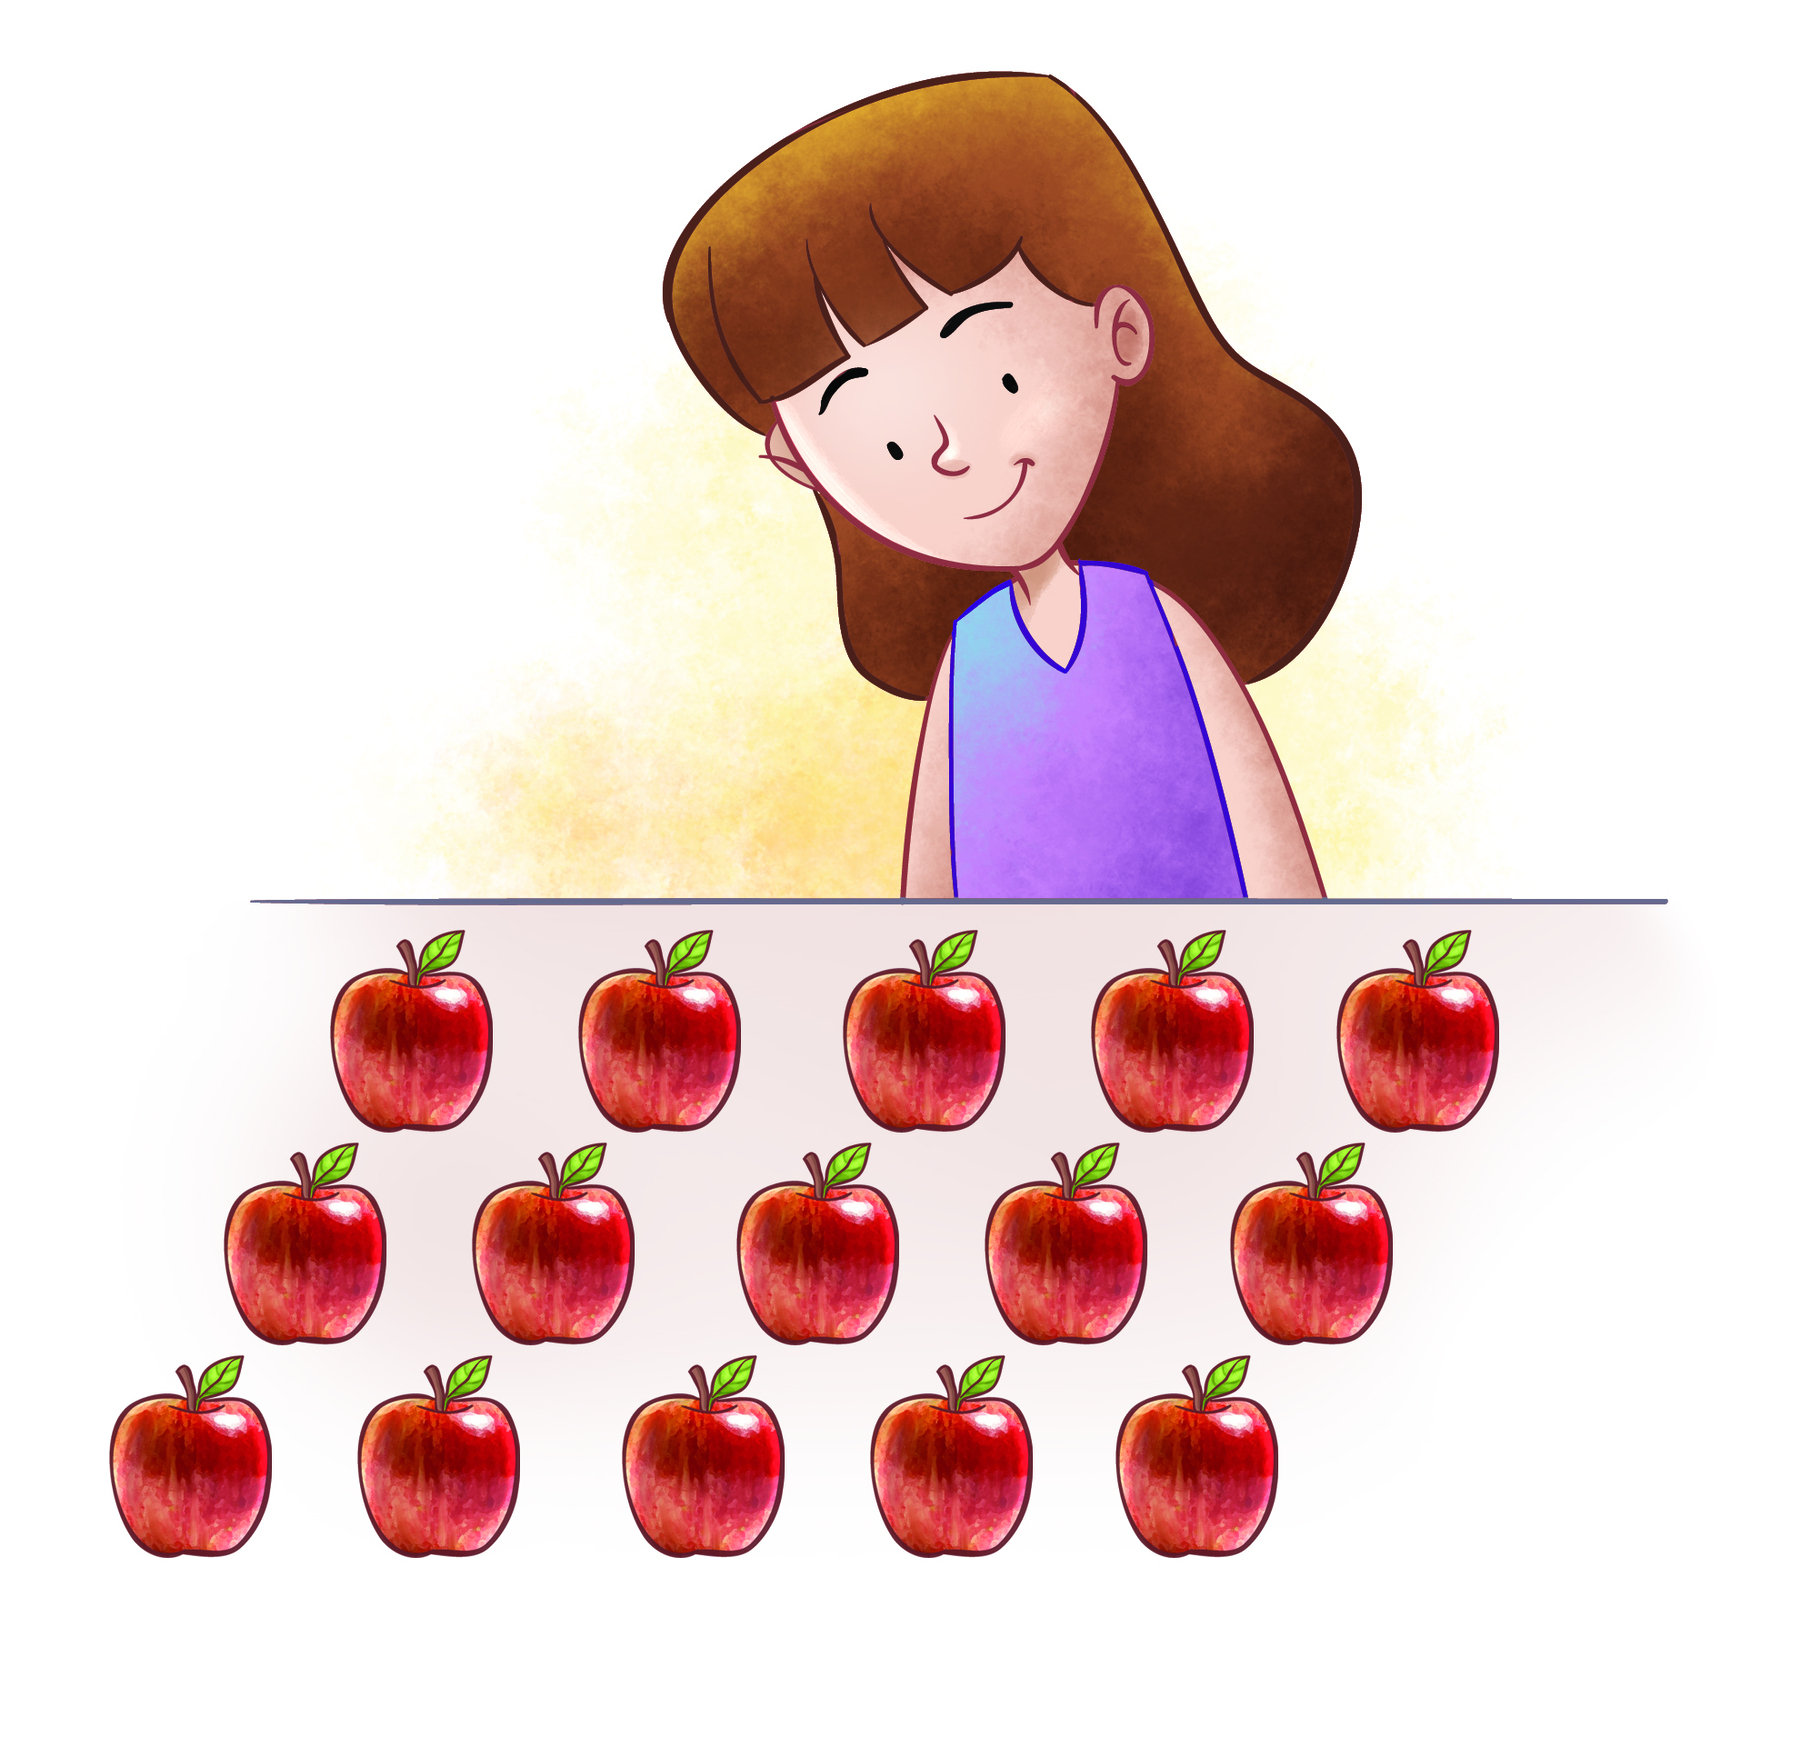 Ilustração. Menina branca de cabelo castanho, liso, com franja, sua blusa é roxa e ela olha para 15 maçãs dispostas em 3 fileiras e cinco colunas.